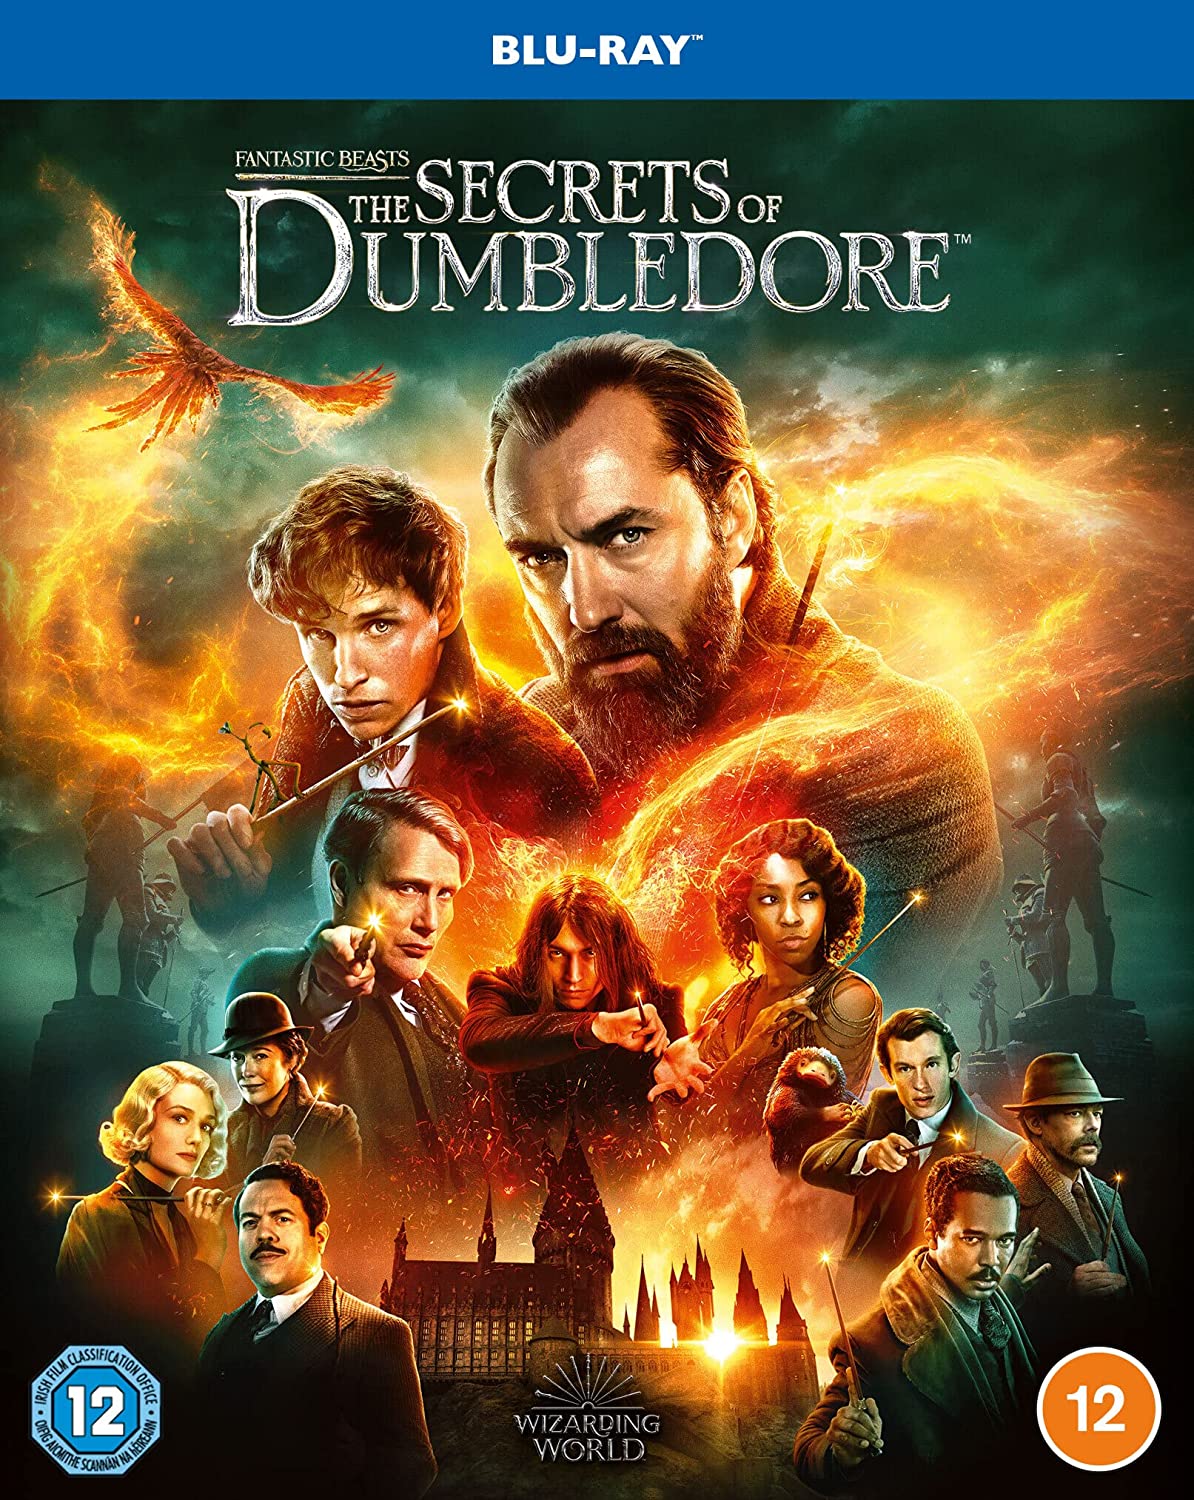 Les secrets de Dumbledore" sur Blu-ray plus le livre officiel du scénario. 4